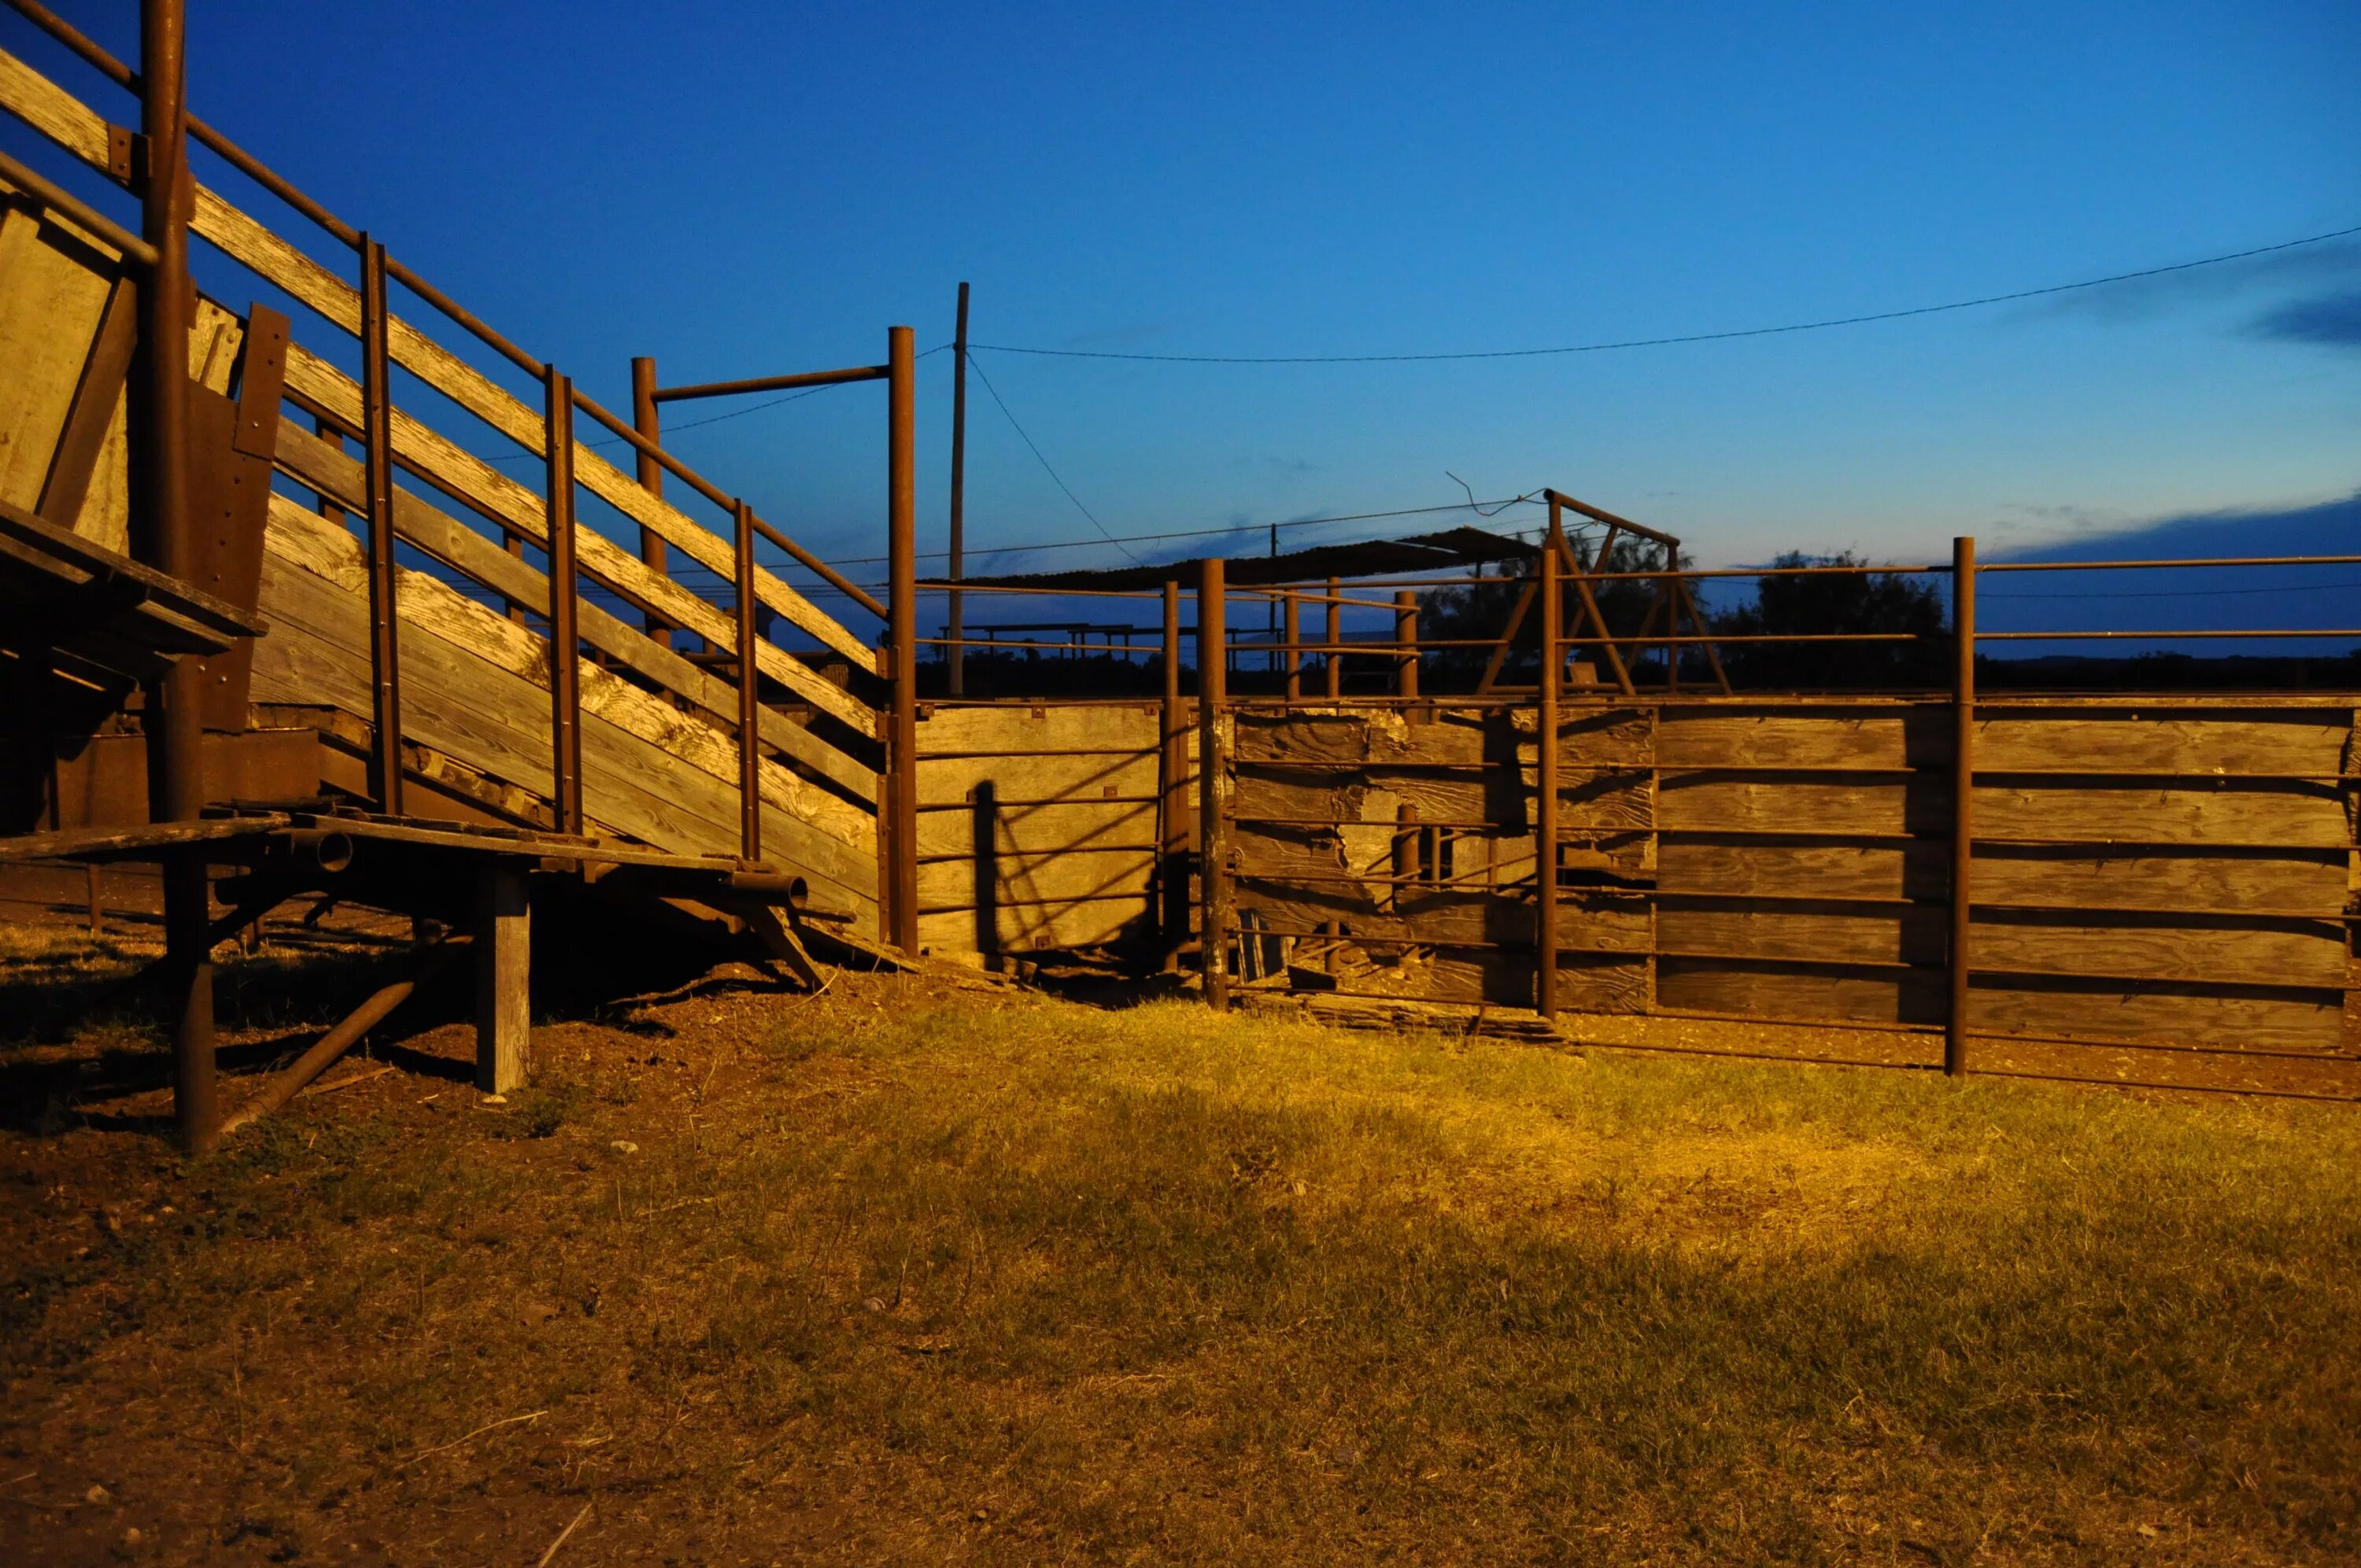 Кораль загон для лошадей. Забор для скота. Загон, в сельском хозяйстве. Ковбойский забор.